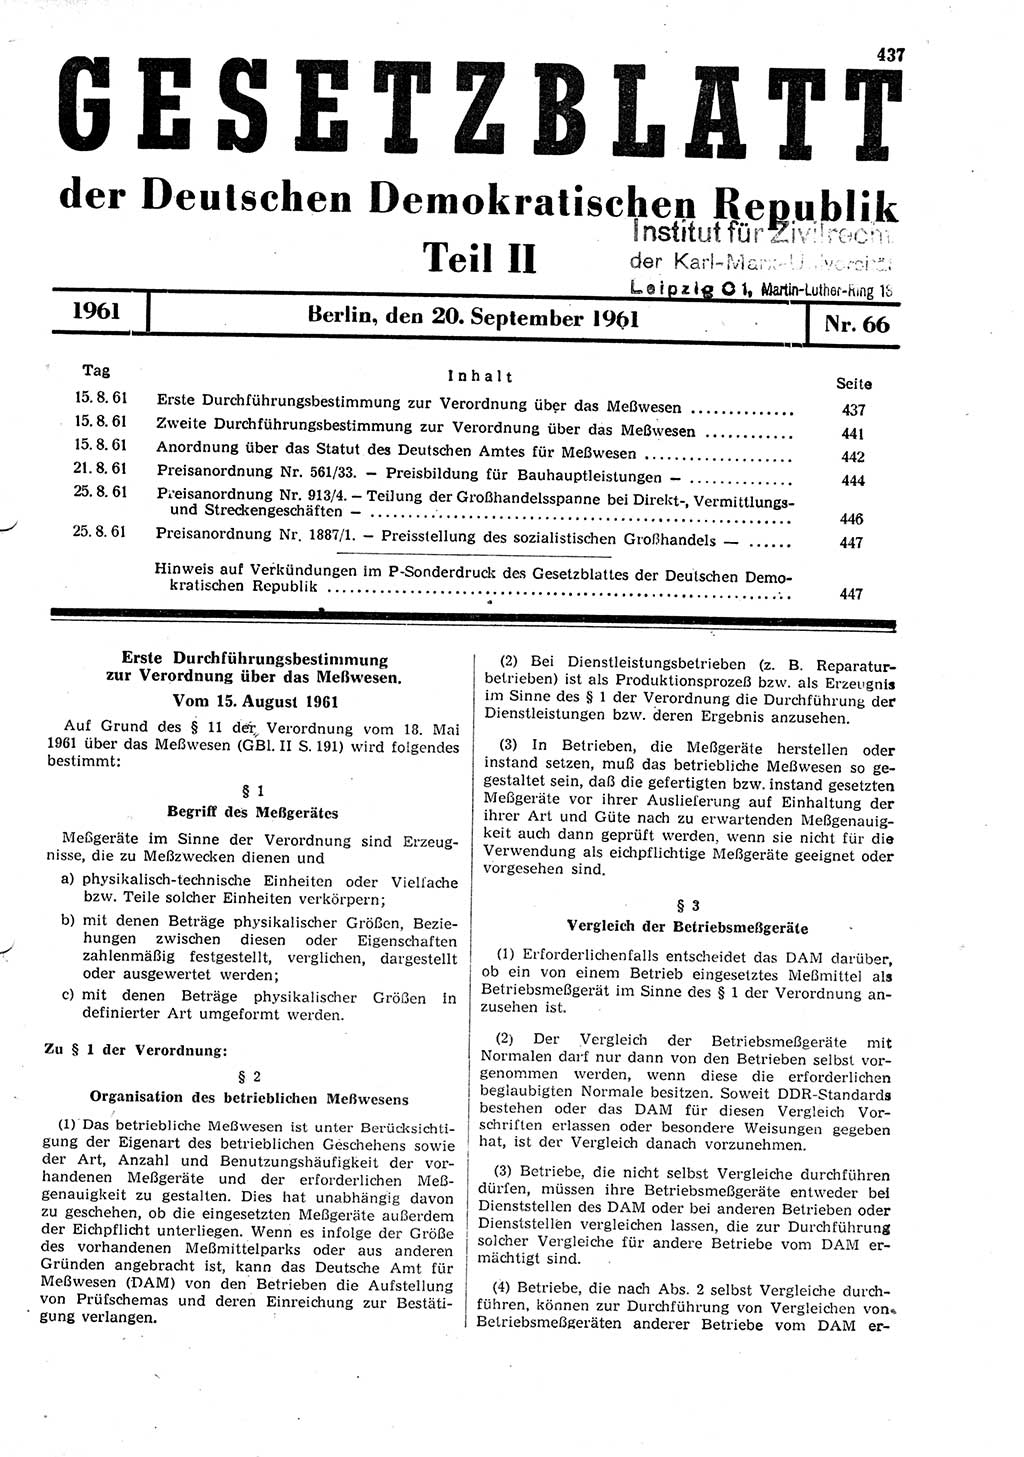 Gesetzblatt (GBl.) der Deutschen Demokratischen Republik (DDR) Teil ⅠⅠ 1961, Seite 437 (GBl. DDR ⅠⅠ 1961, S. 437)